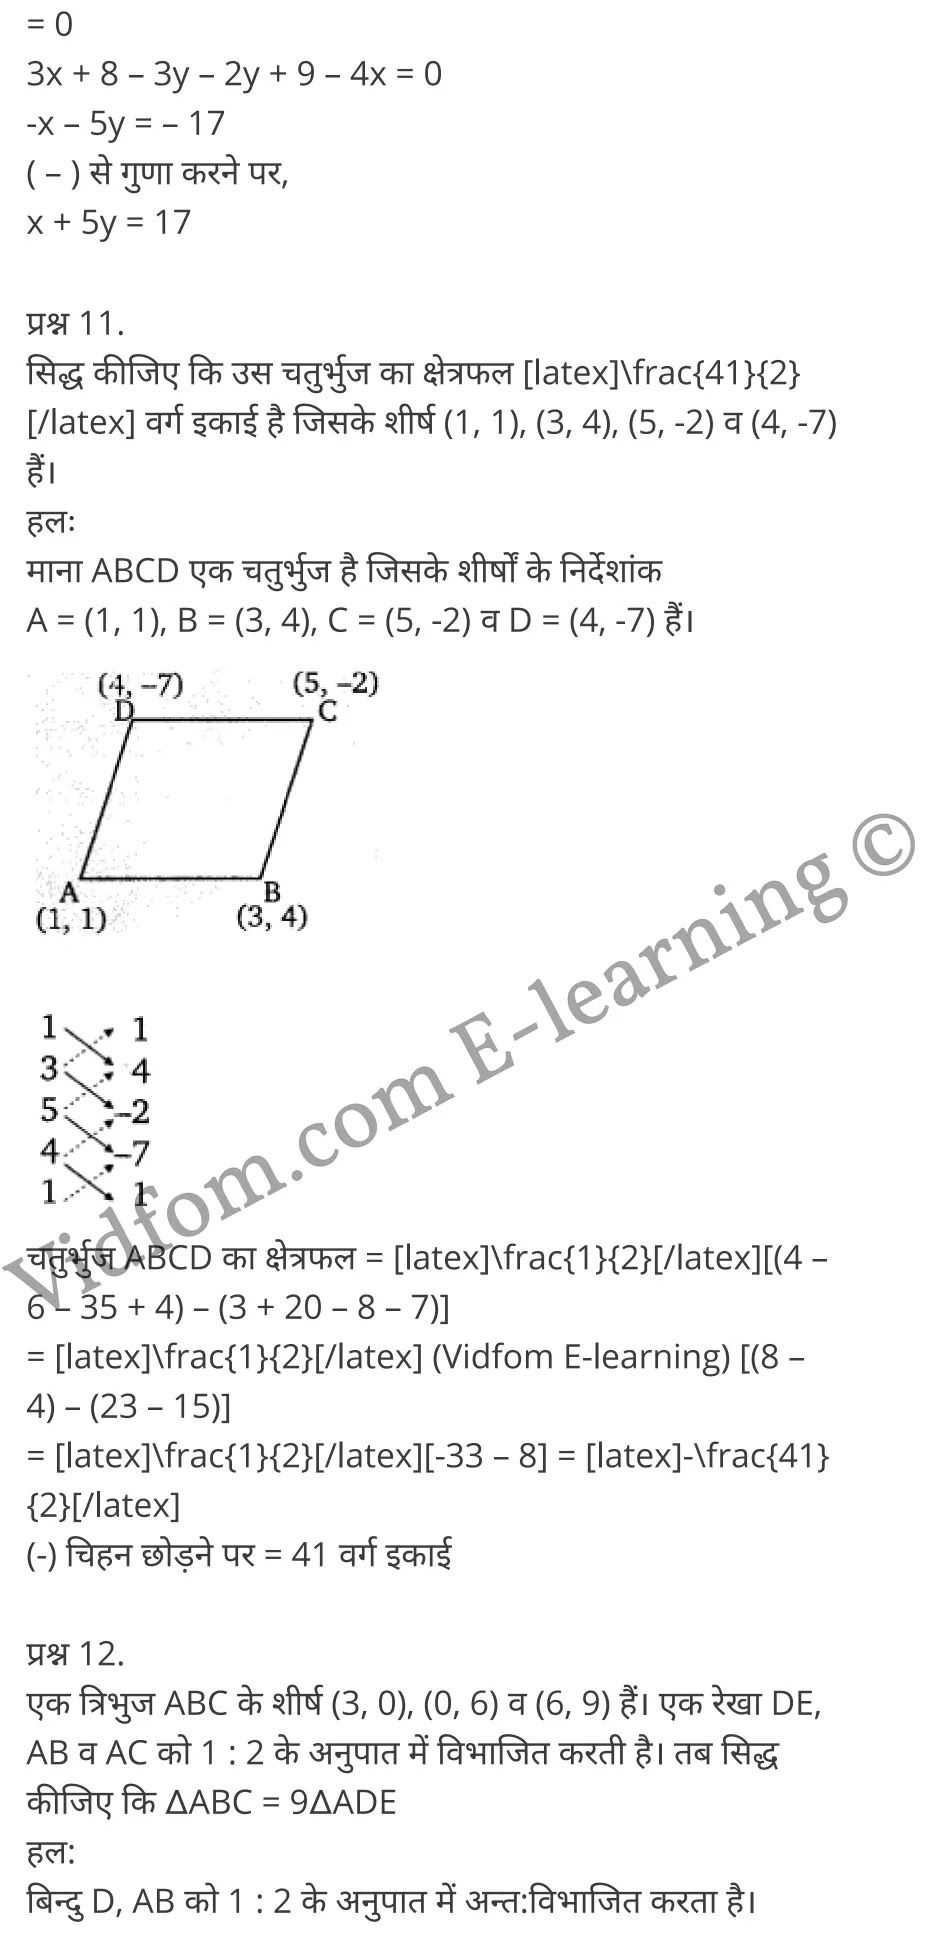 Chapter 6 Coordinate Geometry Ex 6.1 Chapter 6 Coordinate Geometry Ex 6.2 Chapter 6 Coordinate Geometry Ex 6.3 Chapter 6 Coordinate Geometry Ex 6.4 कक्षा 10 बालाजी गणित  के नोट्स  हिंदी में एनसीईआरटी समाधान,     class 10 Balaji Maths Chapter 6,   class 10 Balaji Maths Chapter 6 ncert solutions in Hindi,   class 10 Balaji Maths Chapter 6 notes in hindi,   class 10 Balaji Maths Chapter 6 question answer,   class 10 Balaji Maths Chapter 6 notes,   class 10 Balaji Maths Chapter 6 class 10 Balaji Maths Chapter 6 in  hindi,    class 10 Balaji Maths Chapter 6 important questions in  hindi,   class 10 Balaji Maths Chapter 6 notes in hindi,    class 10 Balaji Maths Chapter 6 test,   class 10 Balaji Maths Chapter 6 pdf,   class 10 Balaji Maths Chapter 6 notes pdf,   class 10 Balaji Maths Chapter 6 exercise solutions,   class 10 Balaji Maths Chapter 6 notes study rankers,   class 10 Balaji Maths Chapter 6 notes,    class 10 Balaji Maths Chapter 6  class 10  notes pdf,   class 10 Balaji Maths Chapter 6 class 10  notes  ncert,   class 10 Balaji Maths Chapter 6 class 10 pdf,   class 10 Balaji Maths Chapter 6  book,   class 10 Balaji Maths Chapter 6 quiz class 10  ,    10  th class 10 Balaji Maths Chapter 6  book up board,   up board 10  th class 10 Balaji Maths Chapter 6 notes,  class 10 Balaji Maths,   class 10 Balaji Maths ncert solutions in Hindi,   class 10 Balaji Maths notes in hindi,   class 10 Balaji Maths question answer,   class 10 Balaji Maths notes,  class 10 Balaji Maths class 10 Balaji Maths Chapter 6 in  hindi,    class 10 Balaji Maths important questions in  hindi,   class 10 Balaji Maths notes in hindi,    class 10 Balaji Maths test,  class 10 Balaji Maths class 10 Balaji Maths Chapter 6 pdf,   class 10 Balaji Maths notes pdf,   class 10 Balaji Maths exercise solutions,   class 10 Balaji Maths,  class 10 Balaji Maths notes study rankers,   class 10 Balaji Maths notes,  class 10 Balaji Maths notes,   class 10 Balaji Maths  class 10  notes pdf,   class 10 Balaji Maths class 10  notes  ncert,   class 10 Balaji Maths class 10 pdf,   class 10 Balaji Maths  book,  class 10 Balaji Maths quiz class 10  ,  10  th class 10 Balaji Maths    book up board,    up board 10  th class 10 Balaji Maths notes,      कक्षा 10 बालाजी गणित अध्याय 6 ,  कक्षा 10 बालाजी गणित, कक्षा 10 बालाजी गणित अध्याय 6  के नोट्स हिंदी में,  कक्षा 10 का हिंदी अध्याय 6 का प्रश्न उत्तर,  कक्षा 10 बालाजी गणित अध्याय 6  के नोट्स,  10 कक्षा बालाजी गणित  हिंदी में, कक्षा 10 बालाजी गणित अध्याय 6  हिंदी में,  कक्षा 10 बालाजी गणित अध्याय 6  महत्वपूर्ण प्रश्न हिंदी में, कक्षा 10   हिंदी के नोट्स  हिंदी में, बालाजी गणित हिंदी में  कक्षा 10 नोट्स pdf,    बालाजी गणित हिंदी में  कक्षा 10 नोट्स 2021 ncert,   बालाजी गणित हिंदी  कक्षा 10 pdf,   बालाजी गणित हिंदी में  पुस्तक,   बालाजी गणित हिंदी में की बुक,   बालाजी गणित हिंदी में  प्रश्नोत्तरी class 10 ,  बिहार बोर्ड 10  पुस्तक वीं हिंदी नोट्स,    बालाजी गणित कक्षा 10 नोट्स 2021 ncert,   बालाजी गणित  कक्षा 10 pdf,   बालाजी गणित  पुस्तक,   बालाजी गणित  प्रश्नोत्तरी class 10, कक्षा 10 बालाजी गणित,  कक्षा 10 बालाजी गणित  के नोट्स हिंदी में,  कक्षा 10 का हिंदी का प्रश्न उत्तर,  कक्षा 10 बालाजी गणित  के नोट्स,  10 कक्षा हिंदी 2021  हिंदी में, कक्षा 10 बालाजी गणित  हिंदी में,  कक्षा 10 बालाजी गणित  महत्वपूर्ण प्रश्न हिंदी में, कक्षा 10 बालाजी गणित  नोट्स  हिंदी में,